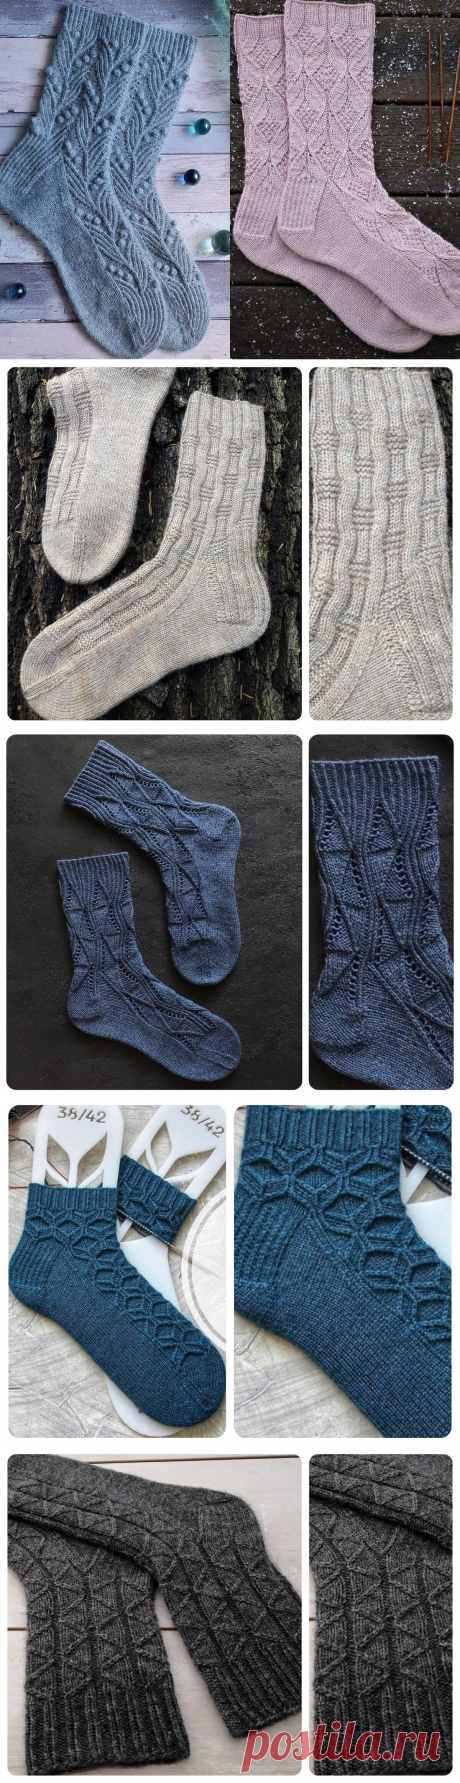 Узоры для носков спицами: 12 простых и красивых вариантов со схемами | Рекомендательная система Пульс Mail.ru